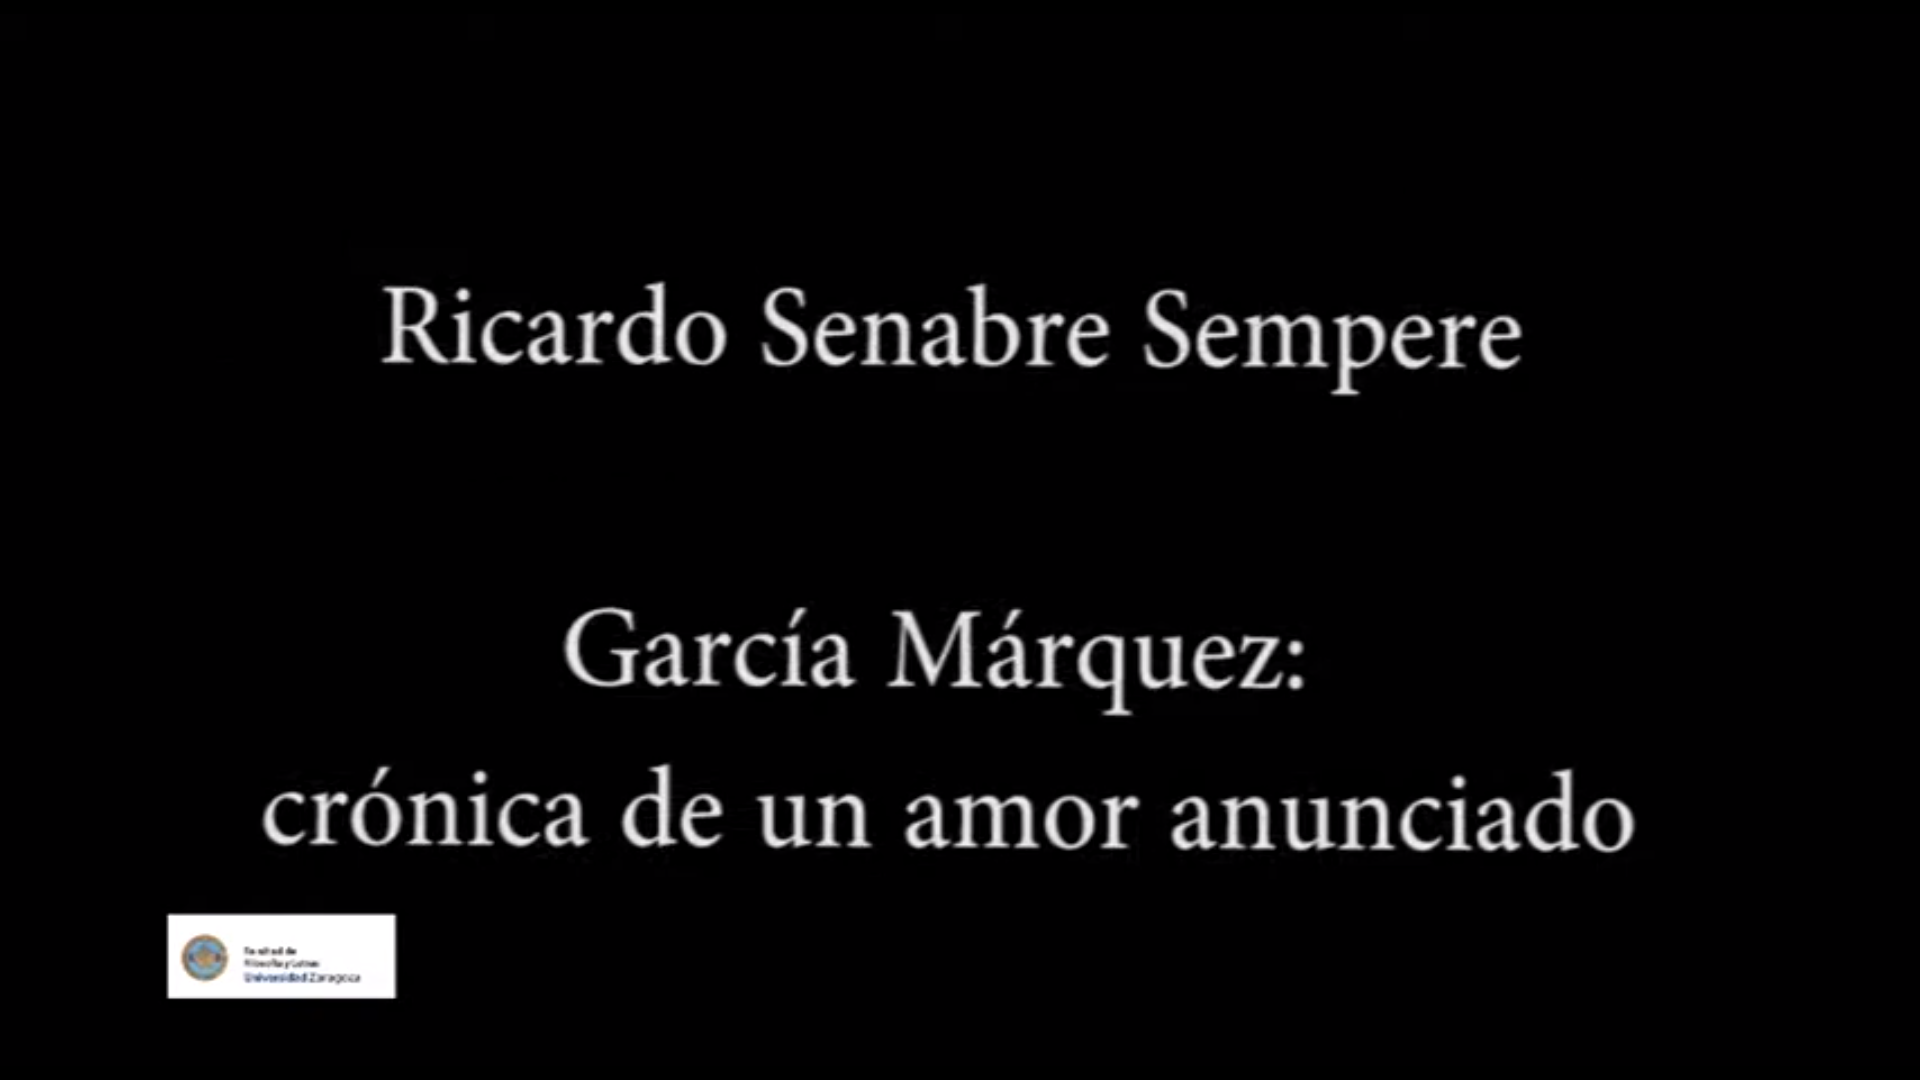 García Márquez: crónica de un amor anunciado